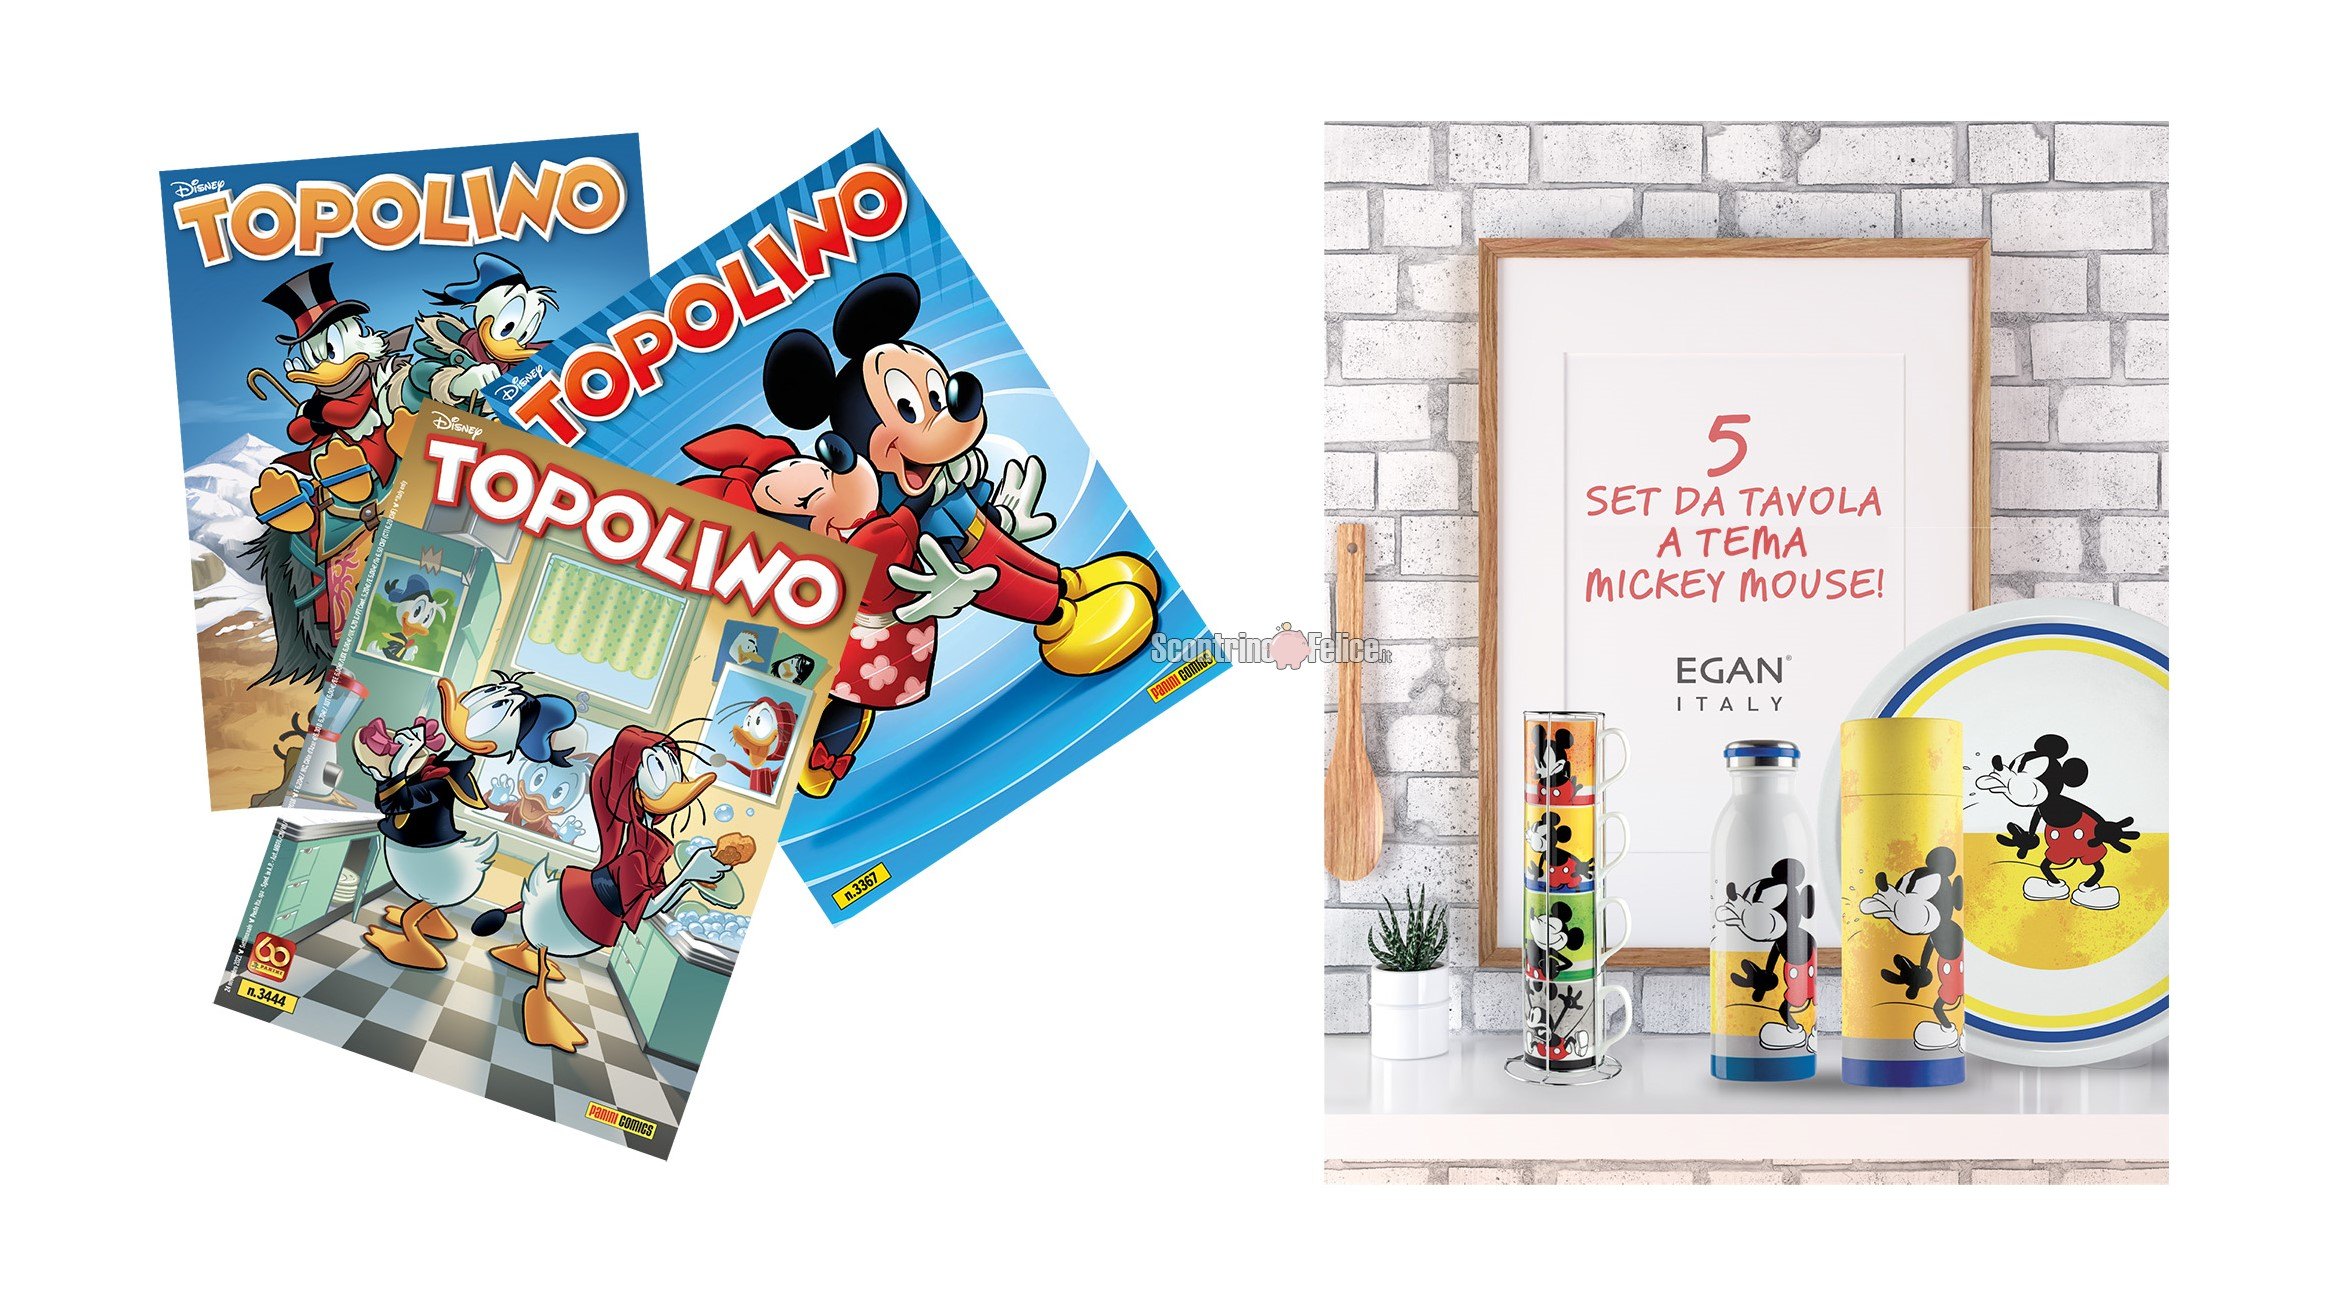 Concorso "I Fumetti con Dole": vinci GRATIS abbonamenti a Topolino e set da tavola Egan a tema Mickey Mouse